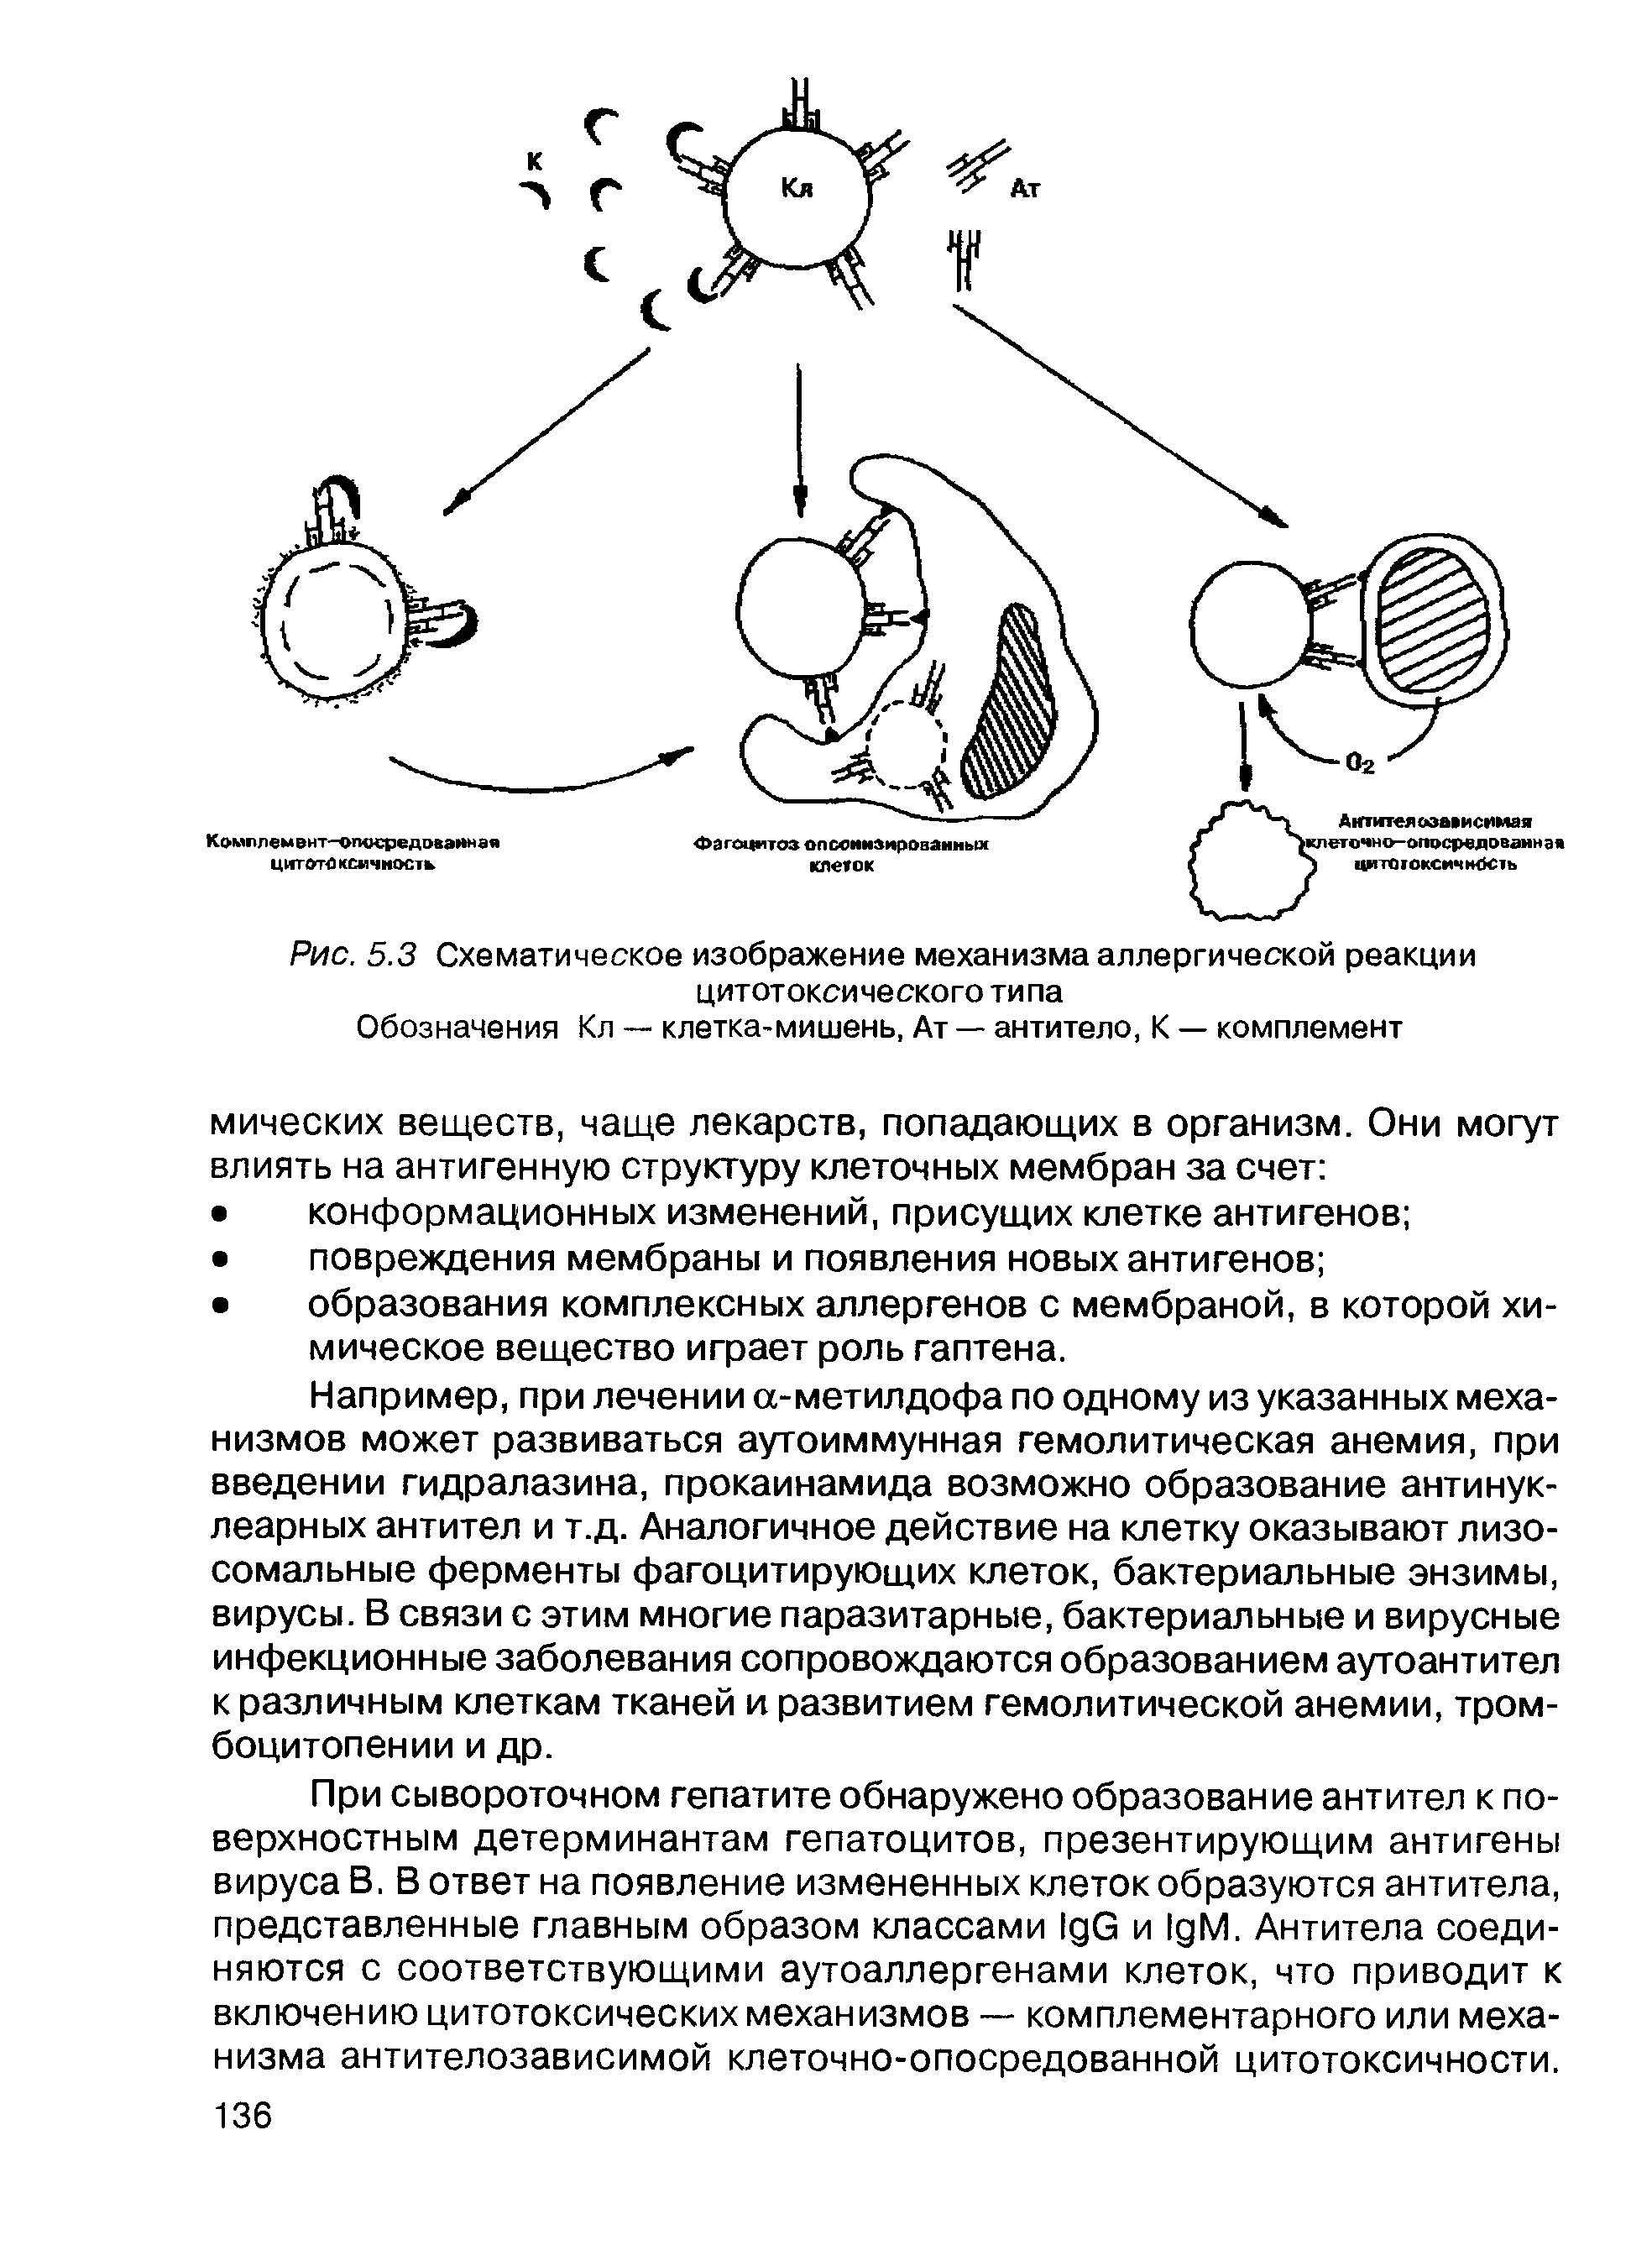 Рис. 5.3 Схематическое изображение механизма аллергической реакции цитотоксического типа...